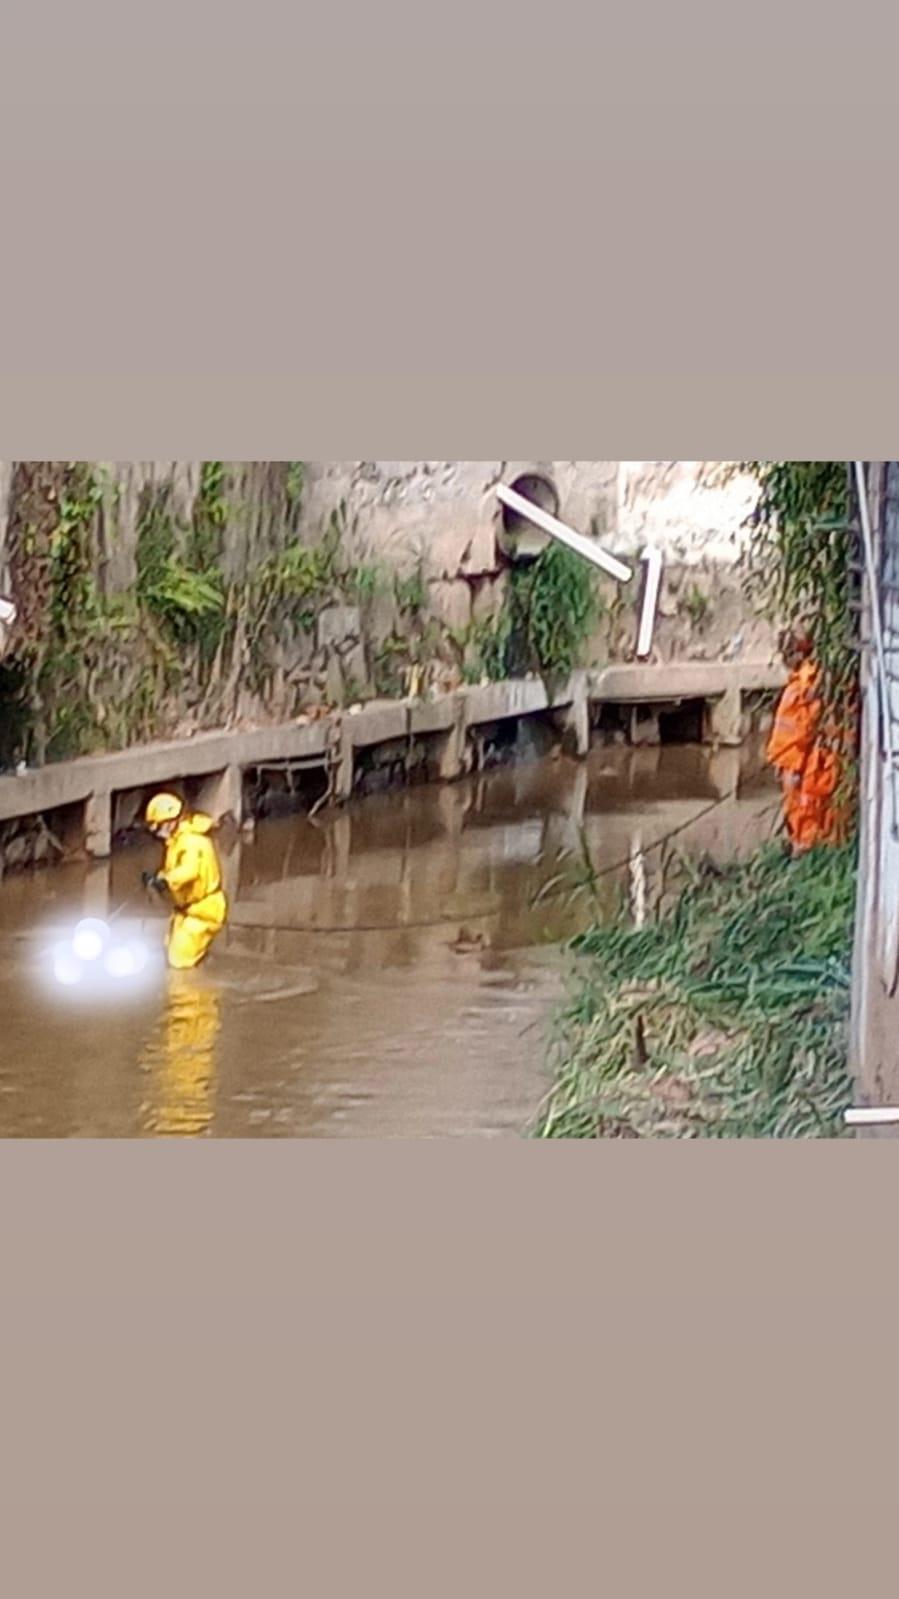 Bombeiros resgataram corpo no Rio Bananeiras